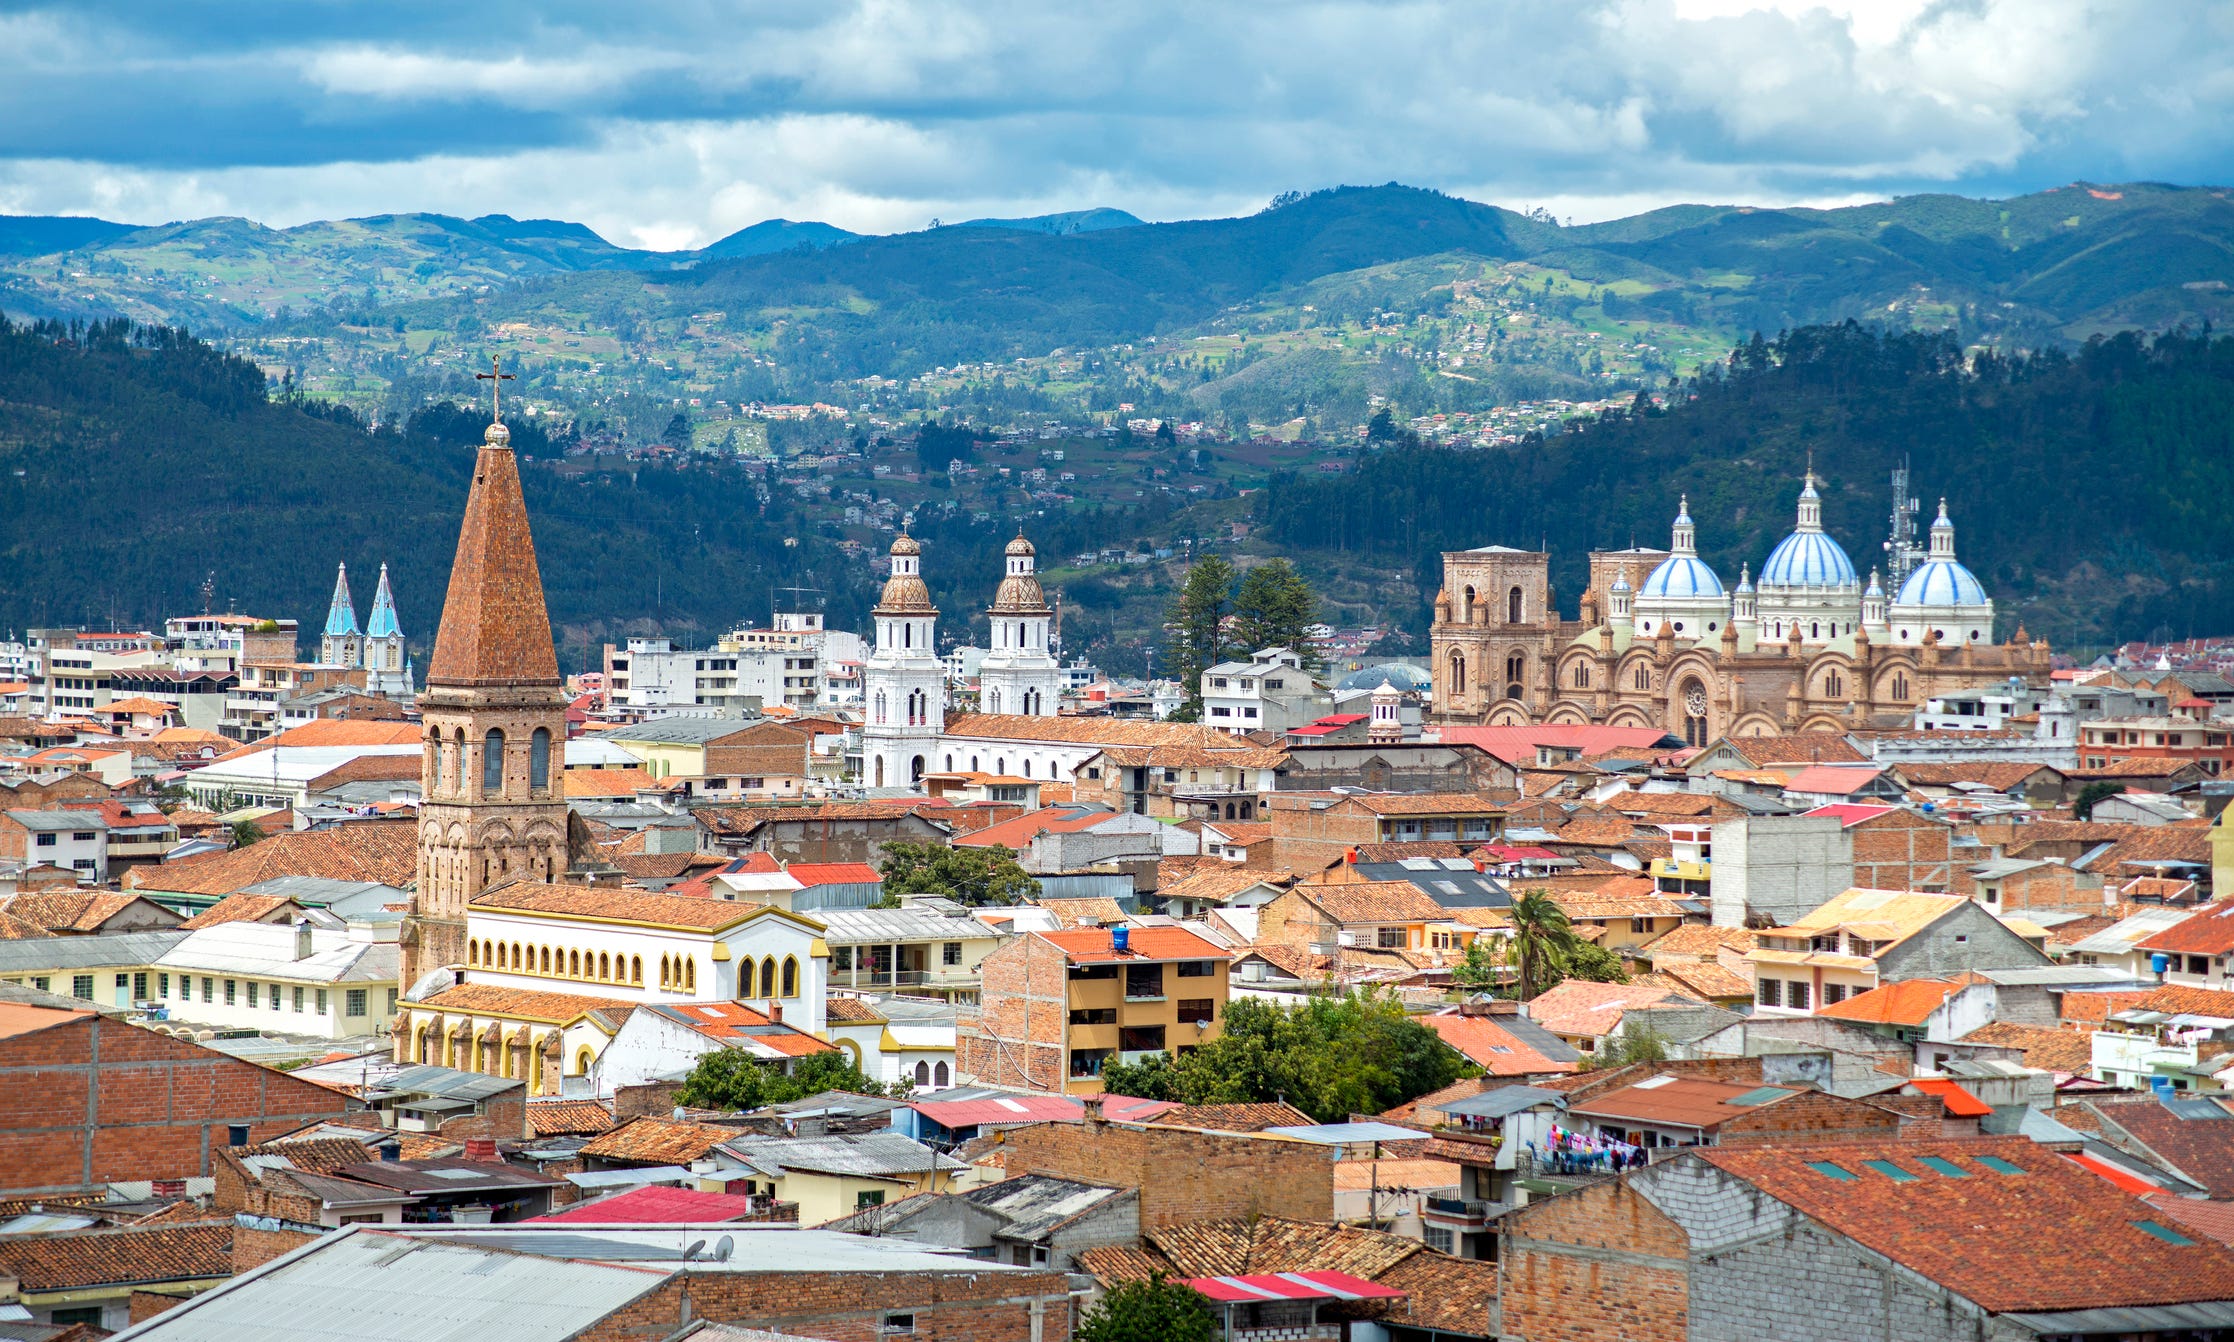 Blick auf die Stadt Cuenca, Ecuador, mit ihren vielen Kirchen und Dächern, an einem bewölkten Tag